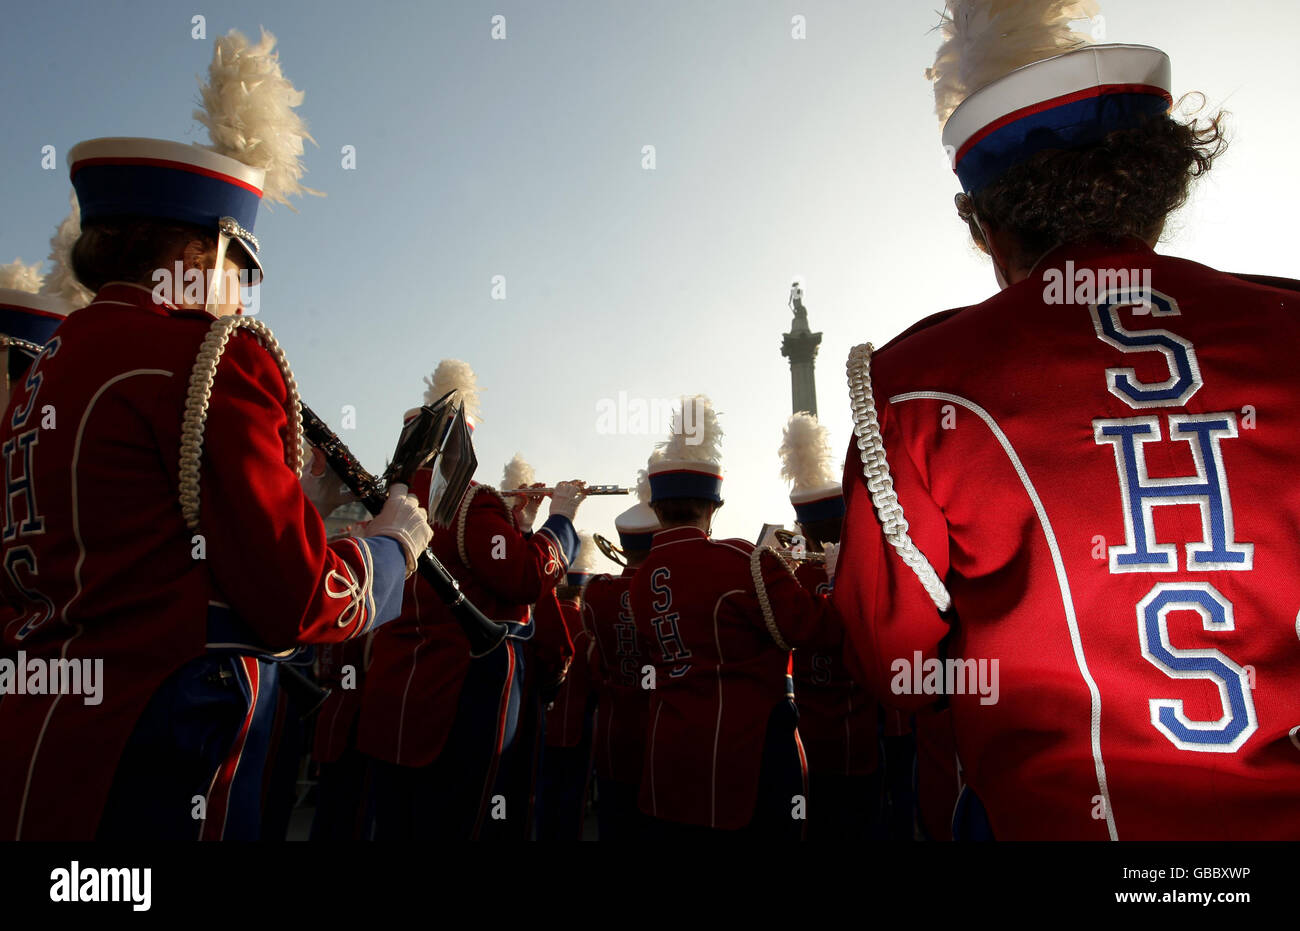 Una banda de marcha de Slinger High School, Wisconsin, en los Estados Unidos de América, actúa frente a la National Gallery, en Trafalgar Square, Londres, como parte de un concierto cálido antes del New Years Day Parade. Foto de stock